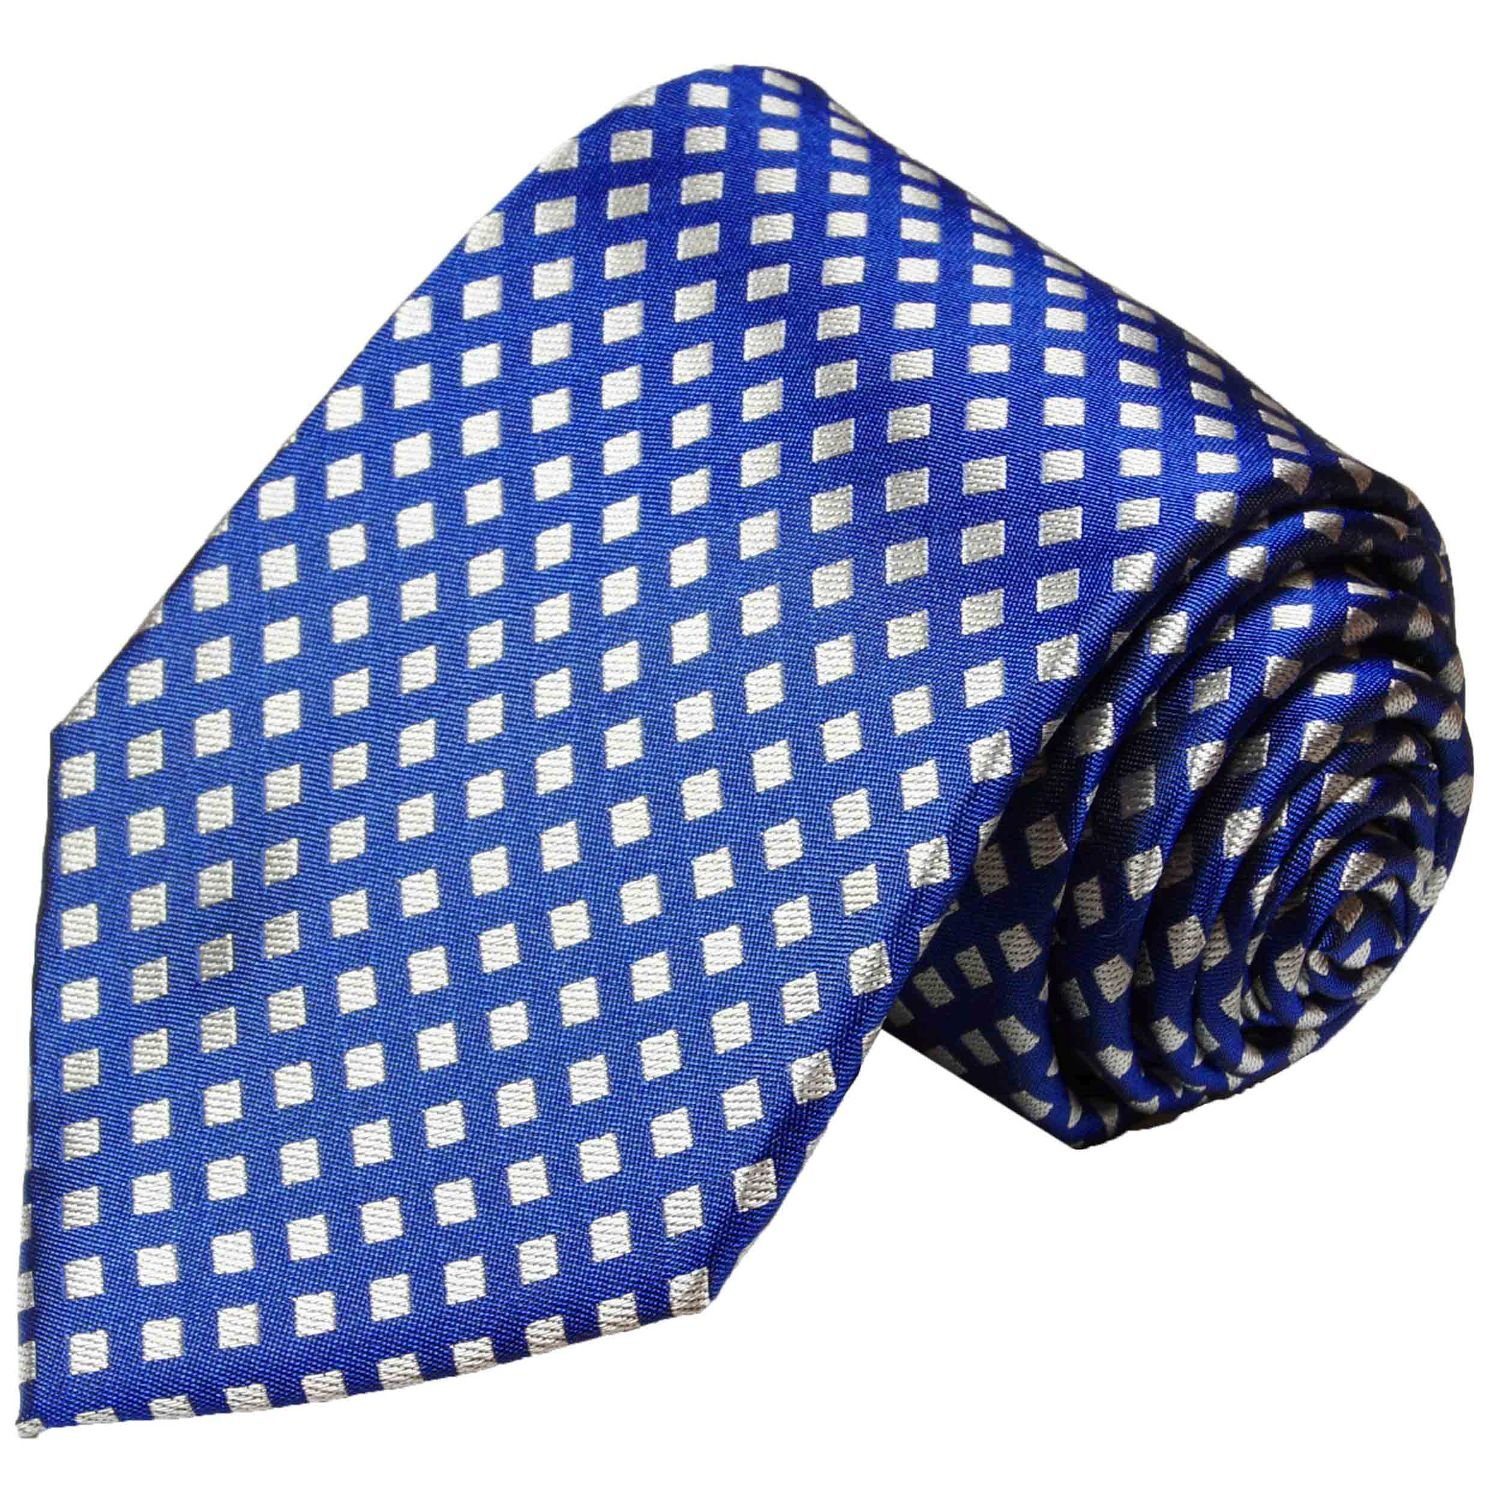 Paul Malone Krawatte Herren Seidenkrawatte Schlips modern kleine Karos 100% Seide Schmal (6cm), blau silber 321